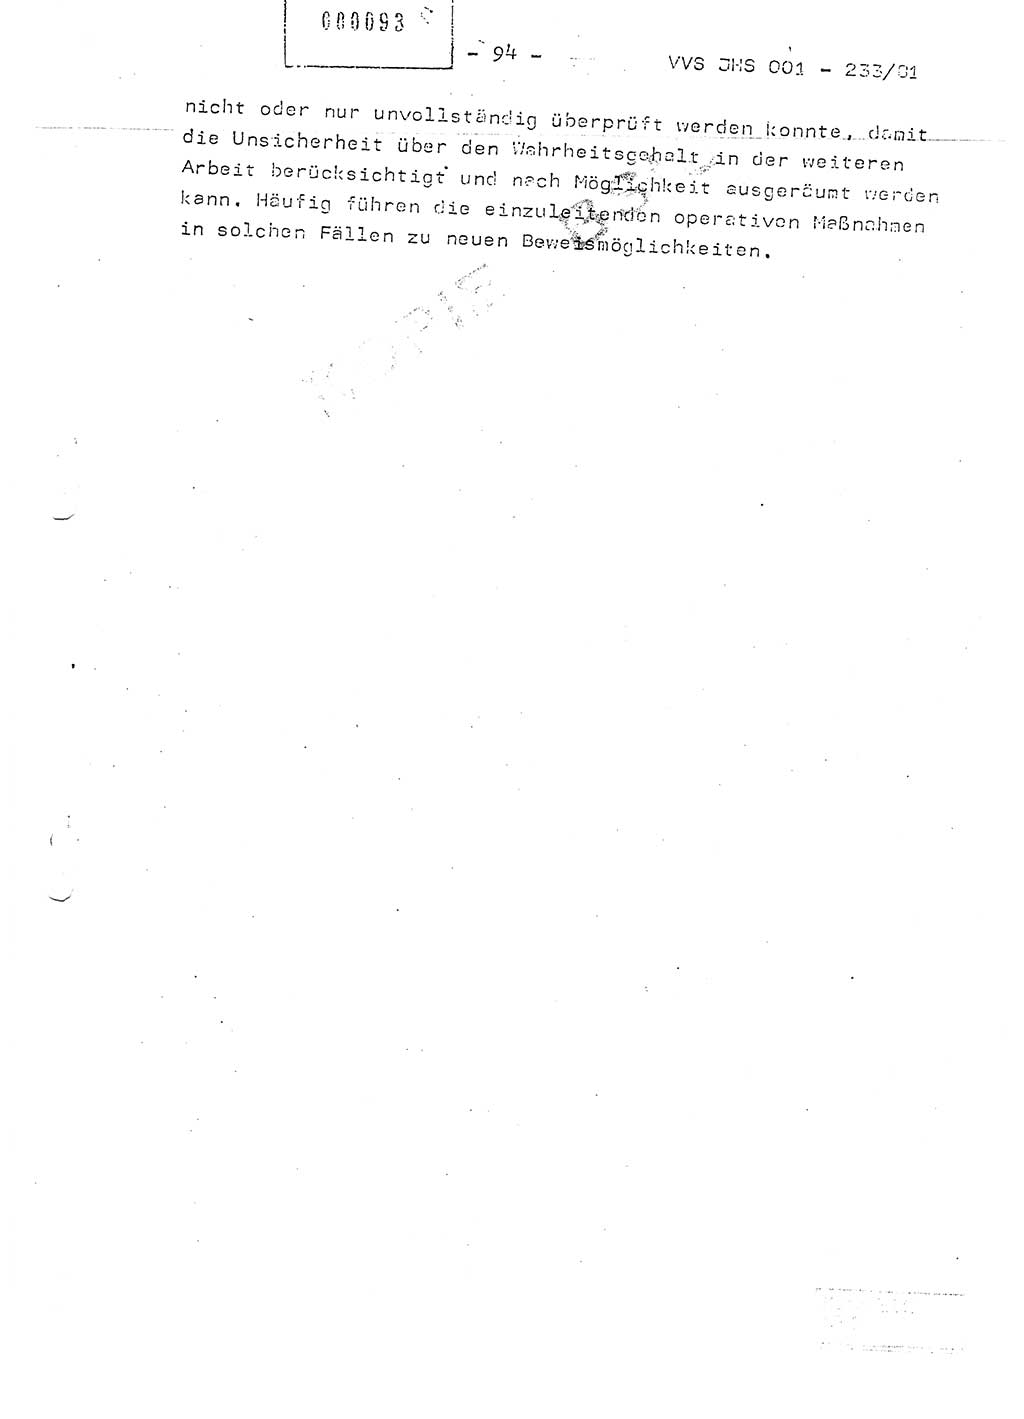 Dissertation Oberstleutnant Horst Zank (JHS), Oberstleutnant Dr. Karl-Heinz Knoblauch (JHS), Oberstleutnant Gustav-Adolf Kowalewski (HA Ⅸ), Oberstleutnant Wolfgang Plötner (HA Ⅸ), Ministerium für Staatssicherheit (MfS) [Deutsche Demokratische Republik (DDR)], Juristische Hochschule (JHS), Vertrauliche Verschlußsache (VVS) o001-233/81, Potsdam 1981, Blatt 94 (Diss. MfS DDR JHS VVS o001-233/81 1981, Bl. 94)